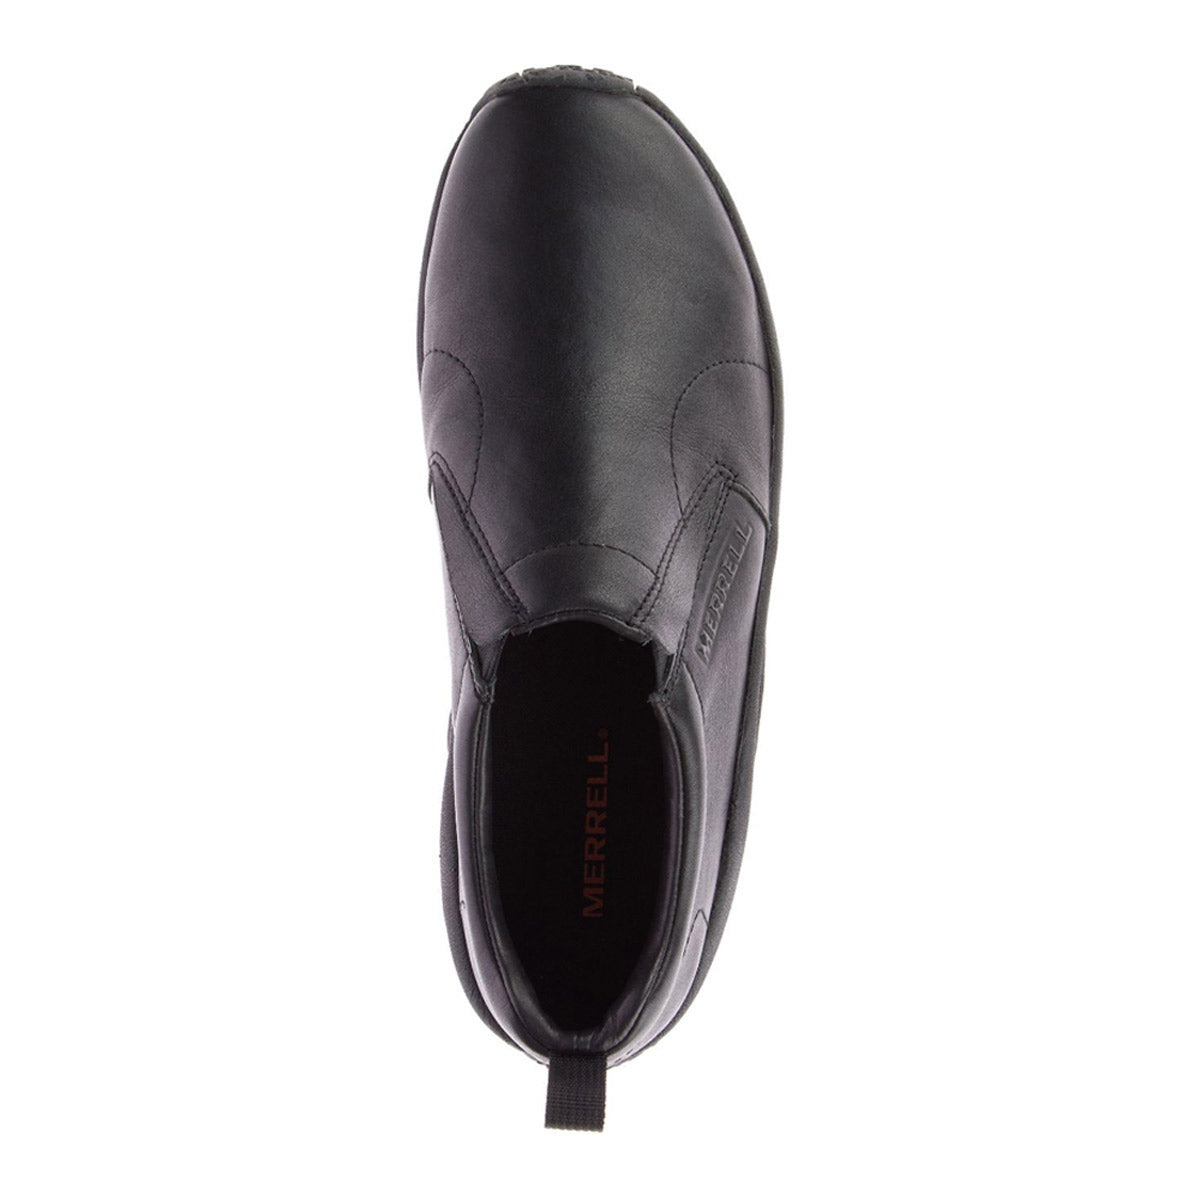 Black Merrell Jungle Moc Leather 2 slip-on shoe, top view.
Product Name: MERRELL JUNGLE MOC LEATHER 2 BLACK - MENS
Brand Name: Merrell